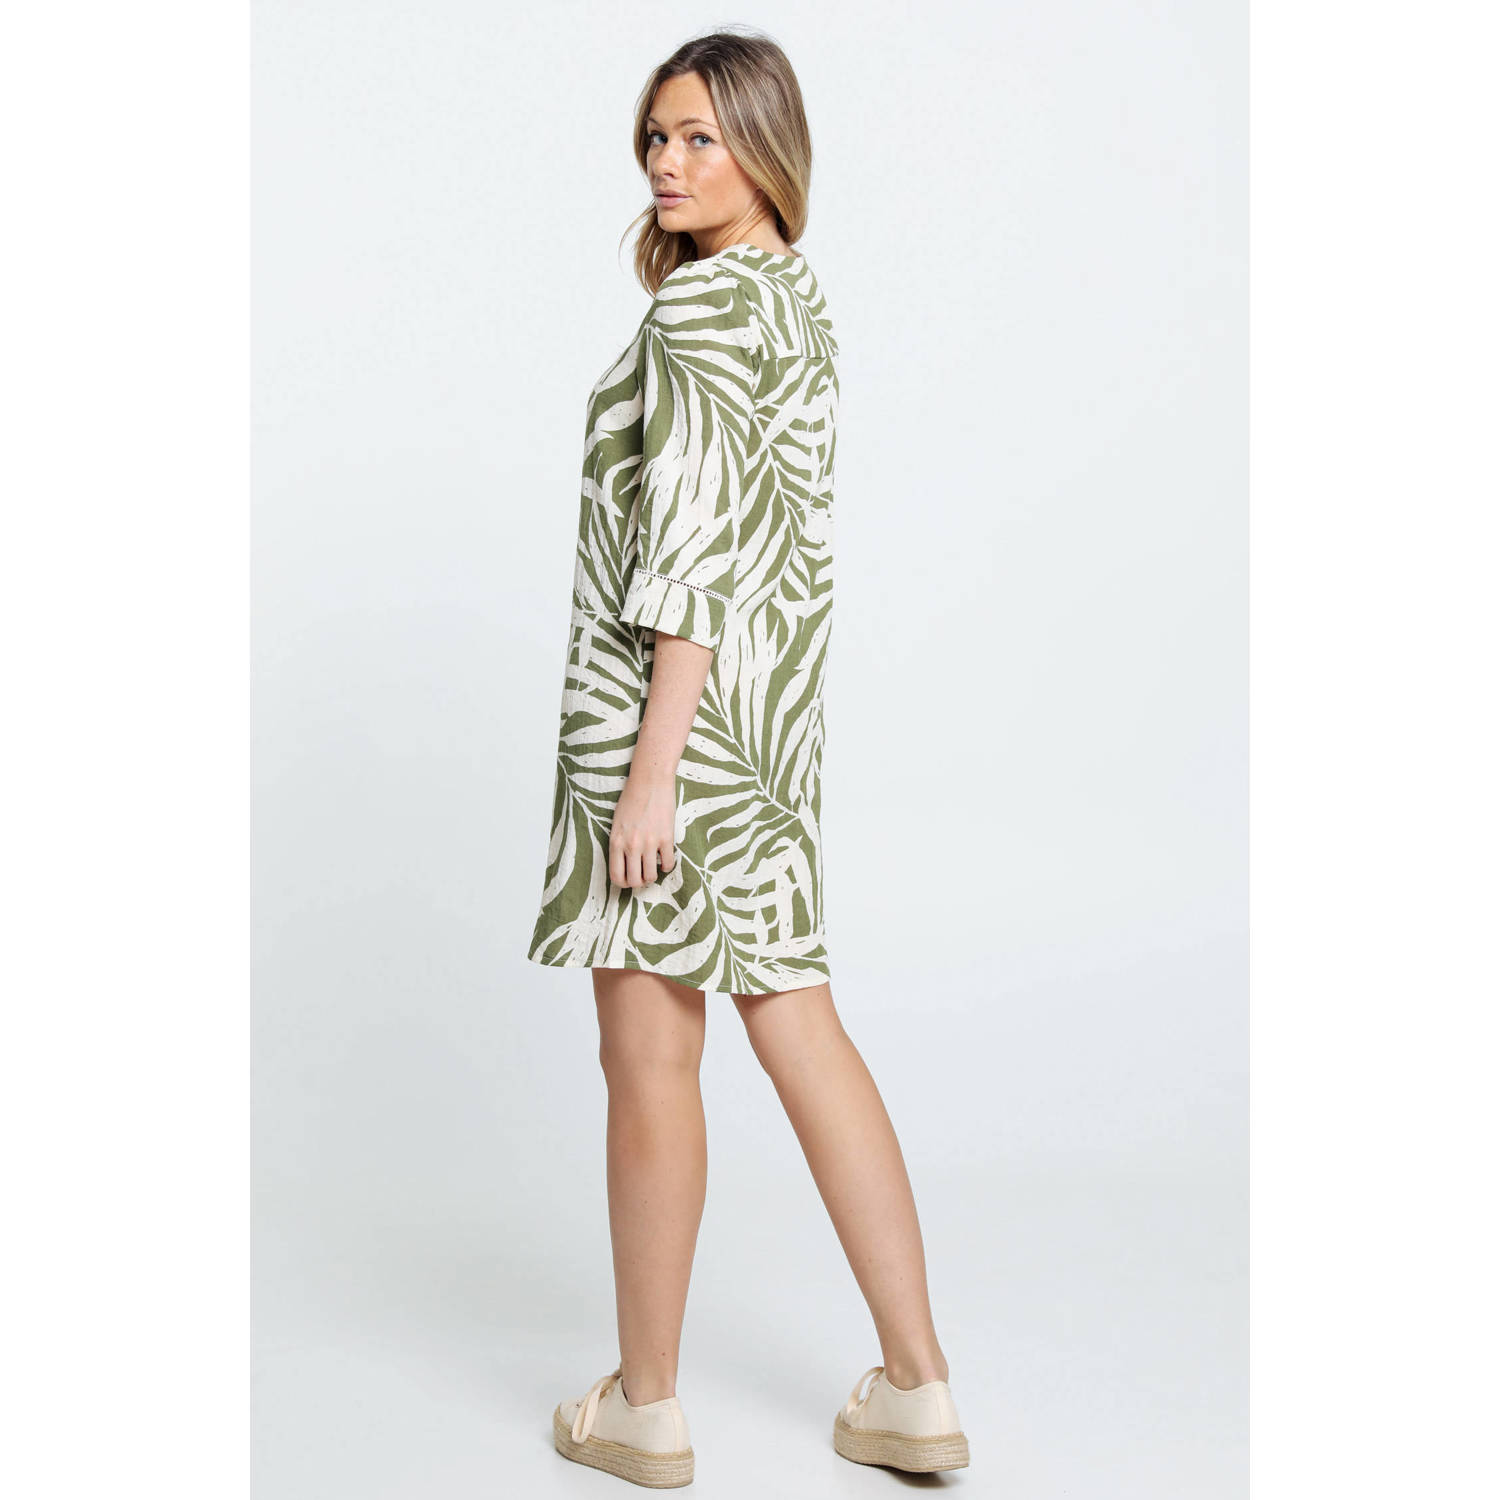 Cassis jurk met all over print en borduursels olijfgroen ecru